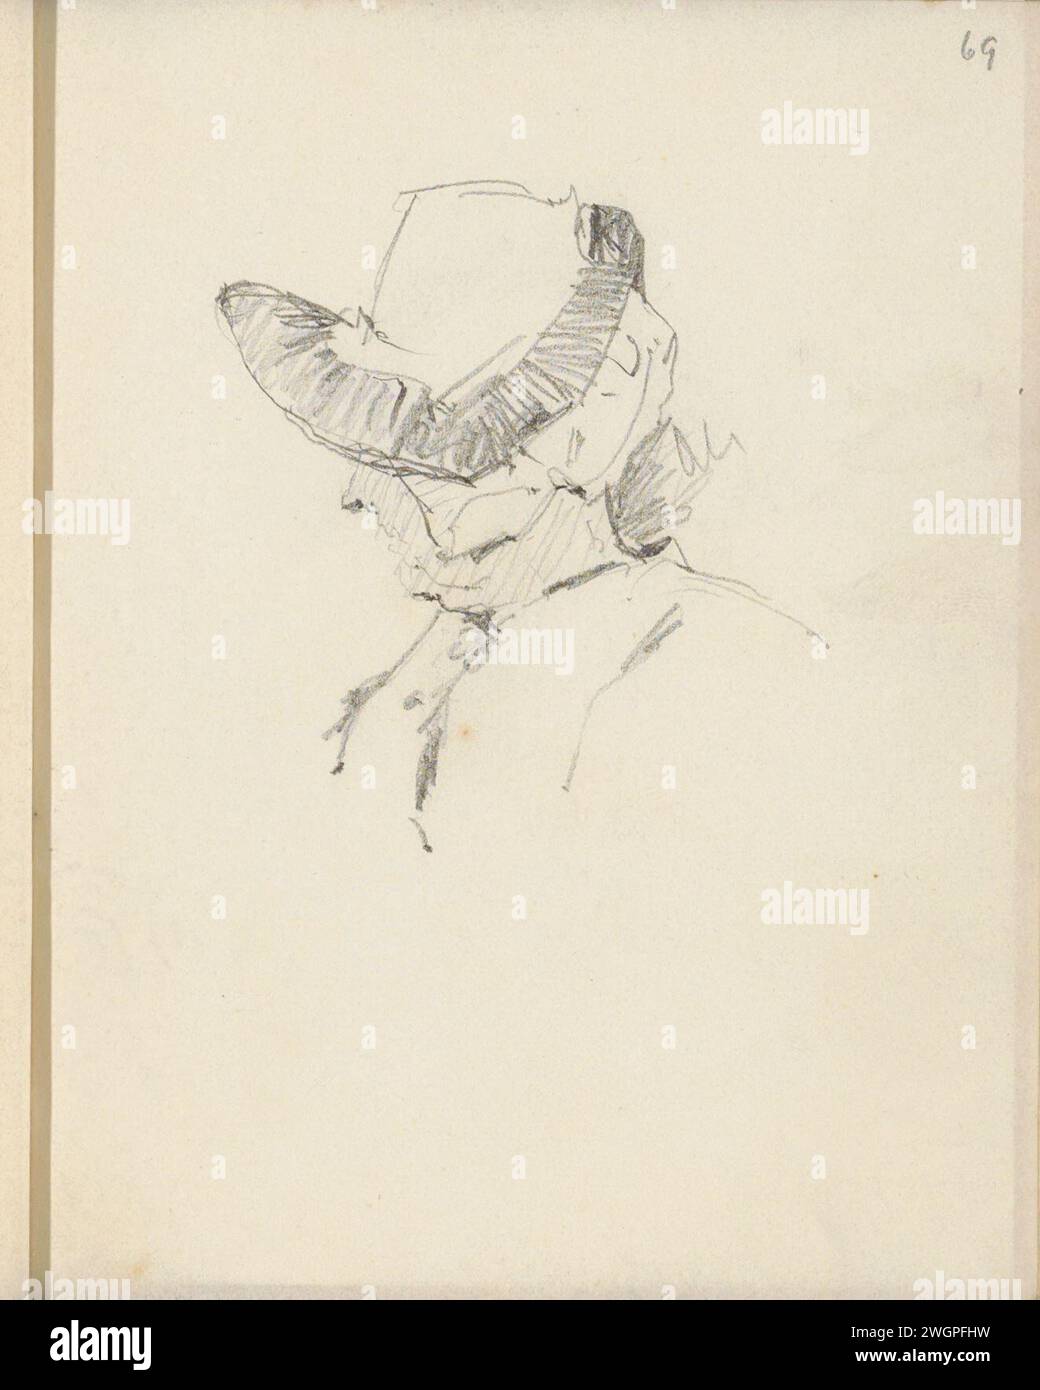 Kopf einer Frau mit Kapuze, ca. 1892 - ca. 1893 Seite 69 Recto aus einem Skizzenbuch mit 86 Blättern. Papier. Bleistift Volkstracht, regionale Tracht (+ Damenkleidung) Stockfoto